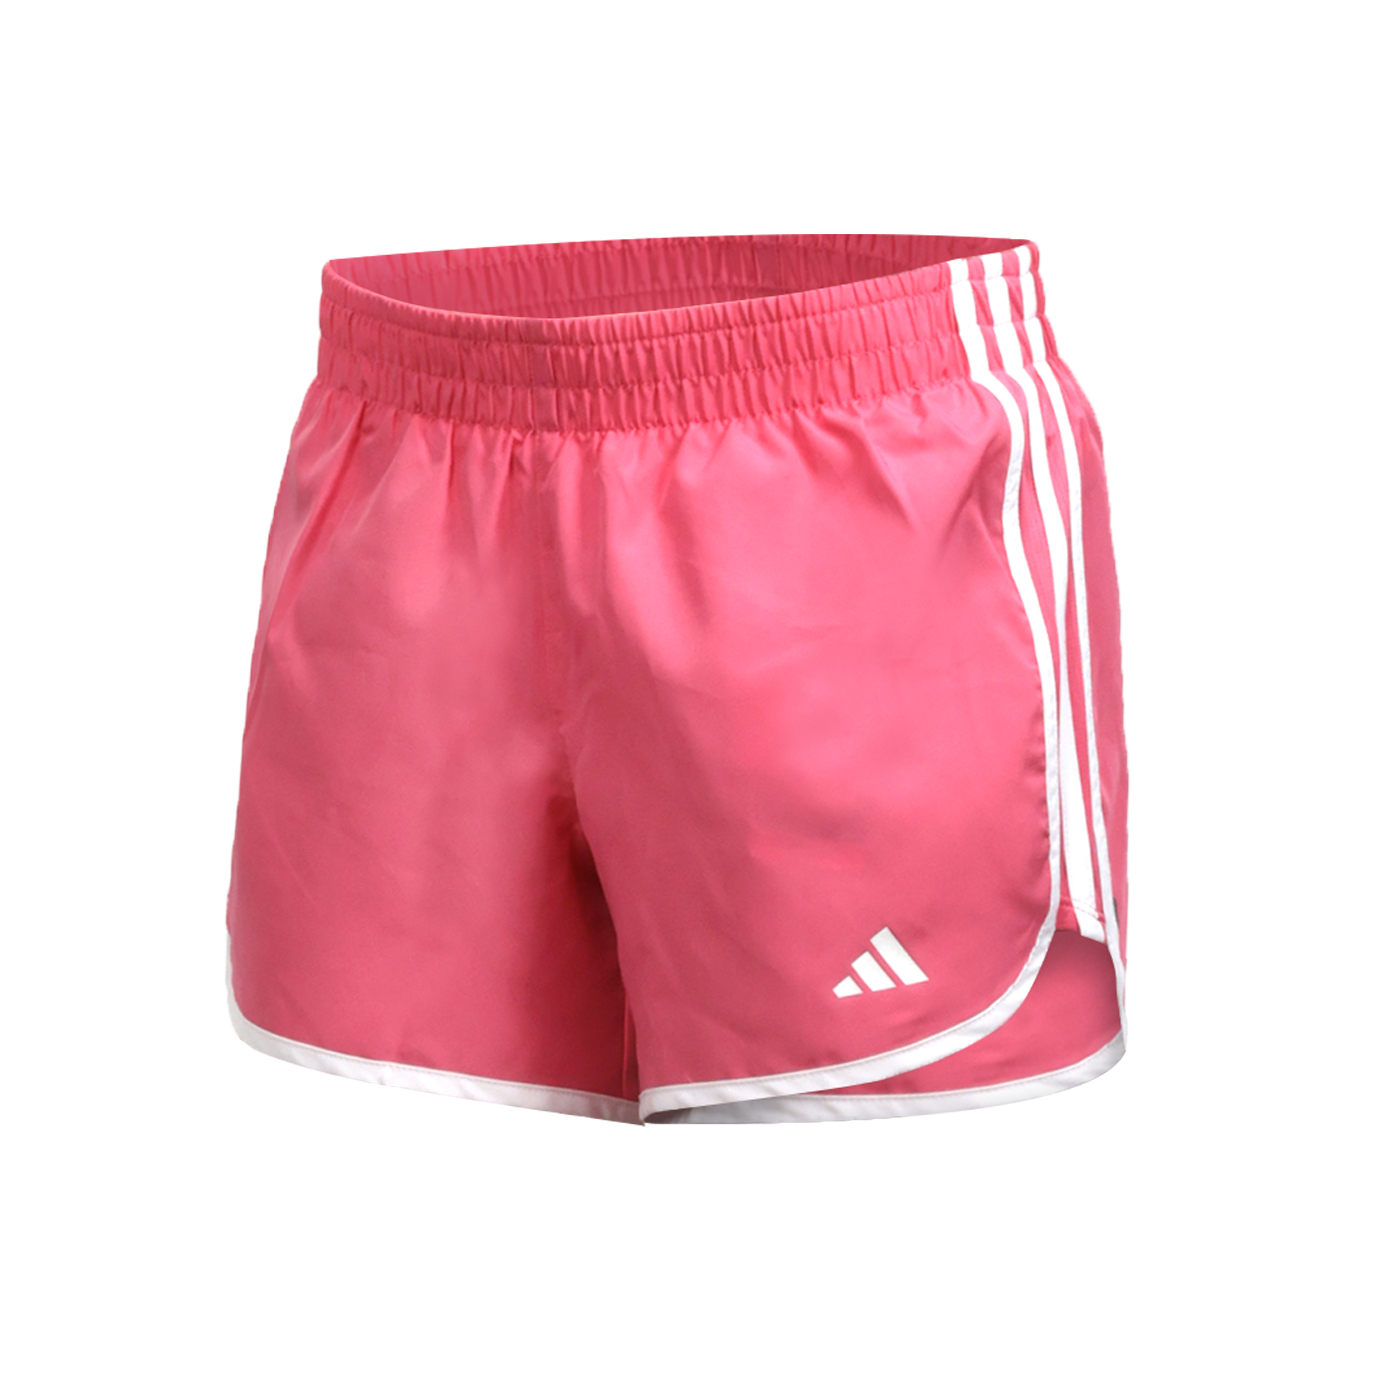 ADIDAS 女款運動短褲  IL1682 - 粉紅白